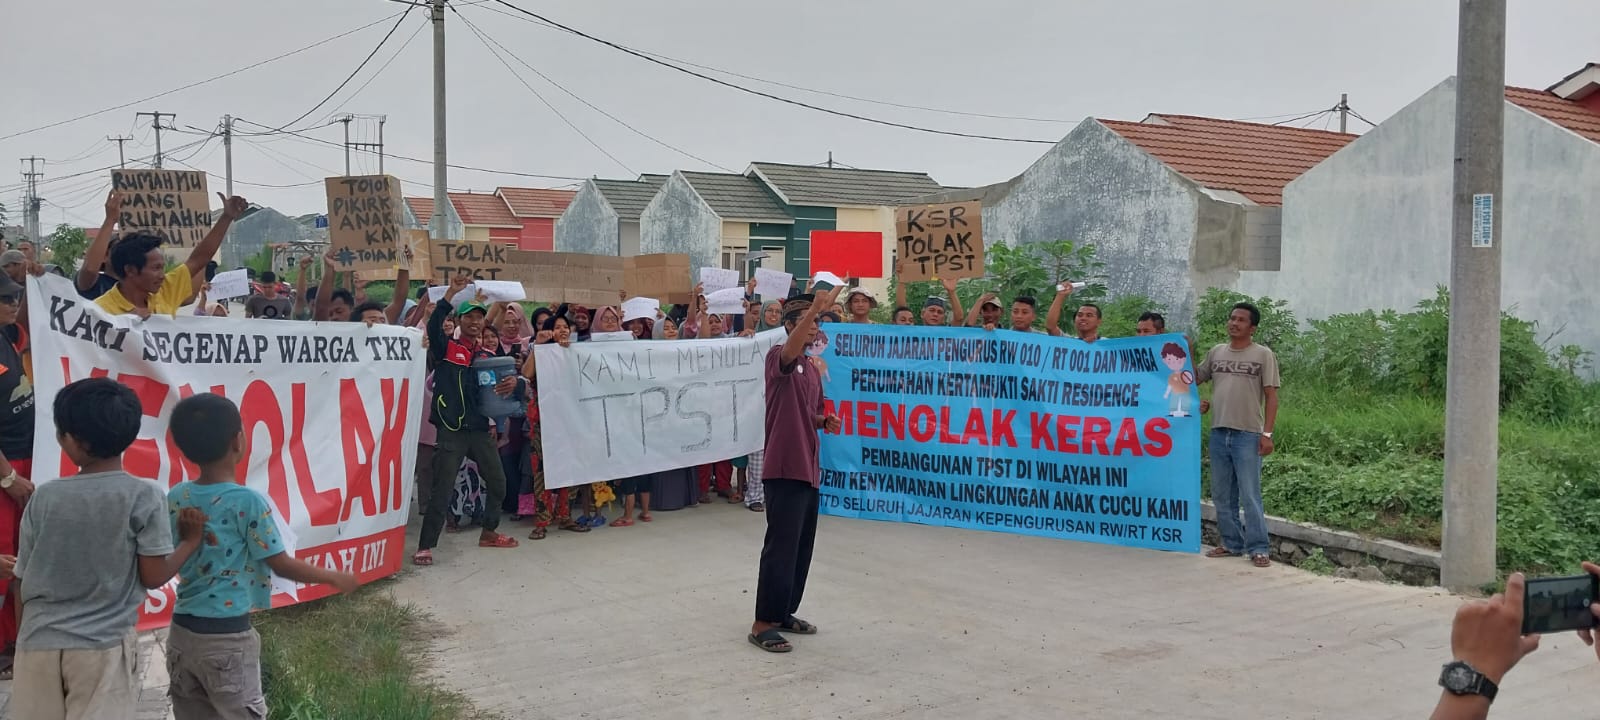 Rencana TPST di Desa Kertamukti Mendapat Penolakan, Jarak Terlalu Dekat dengan Pemukiman